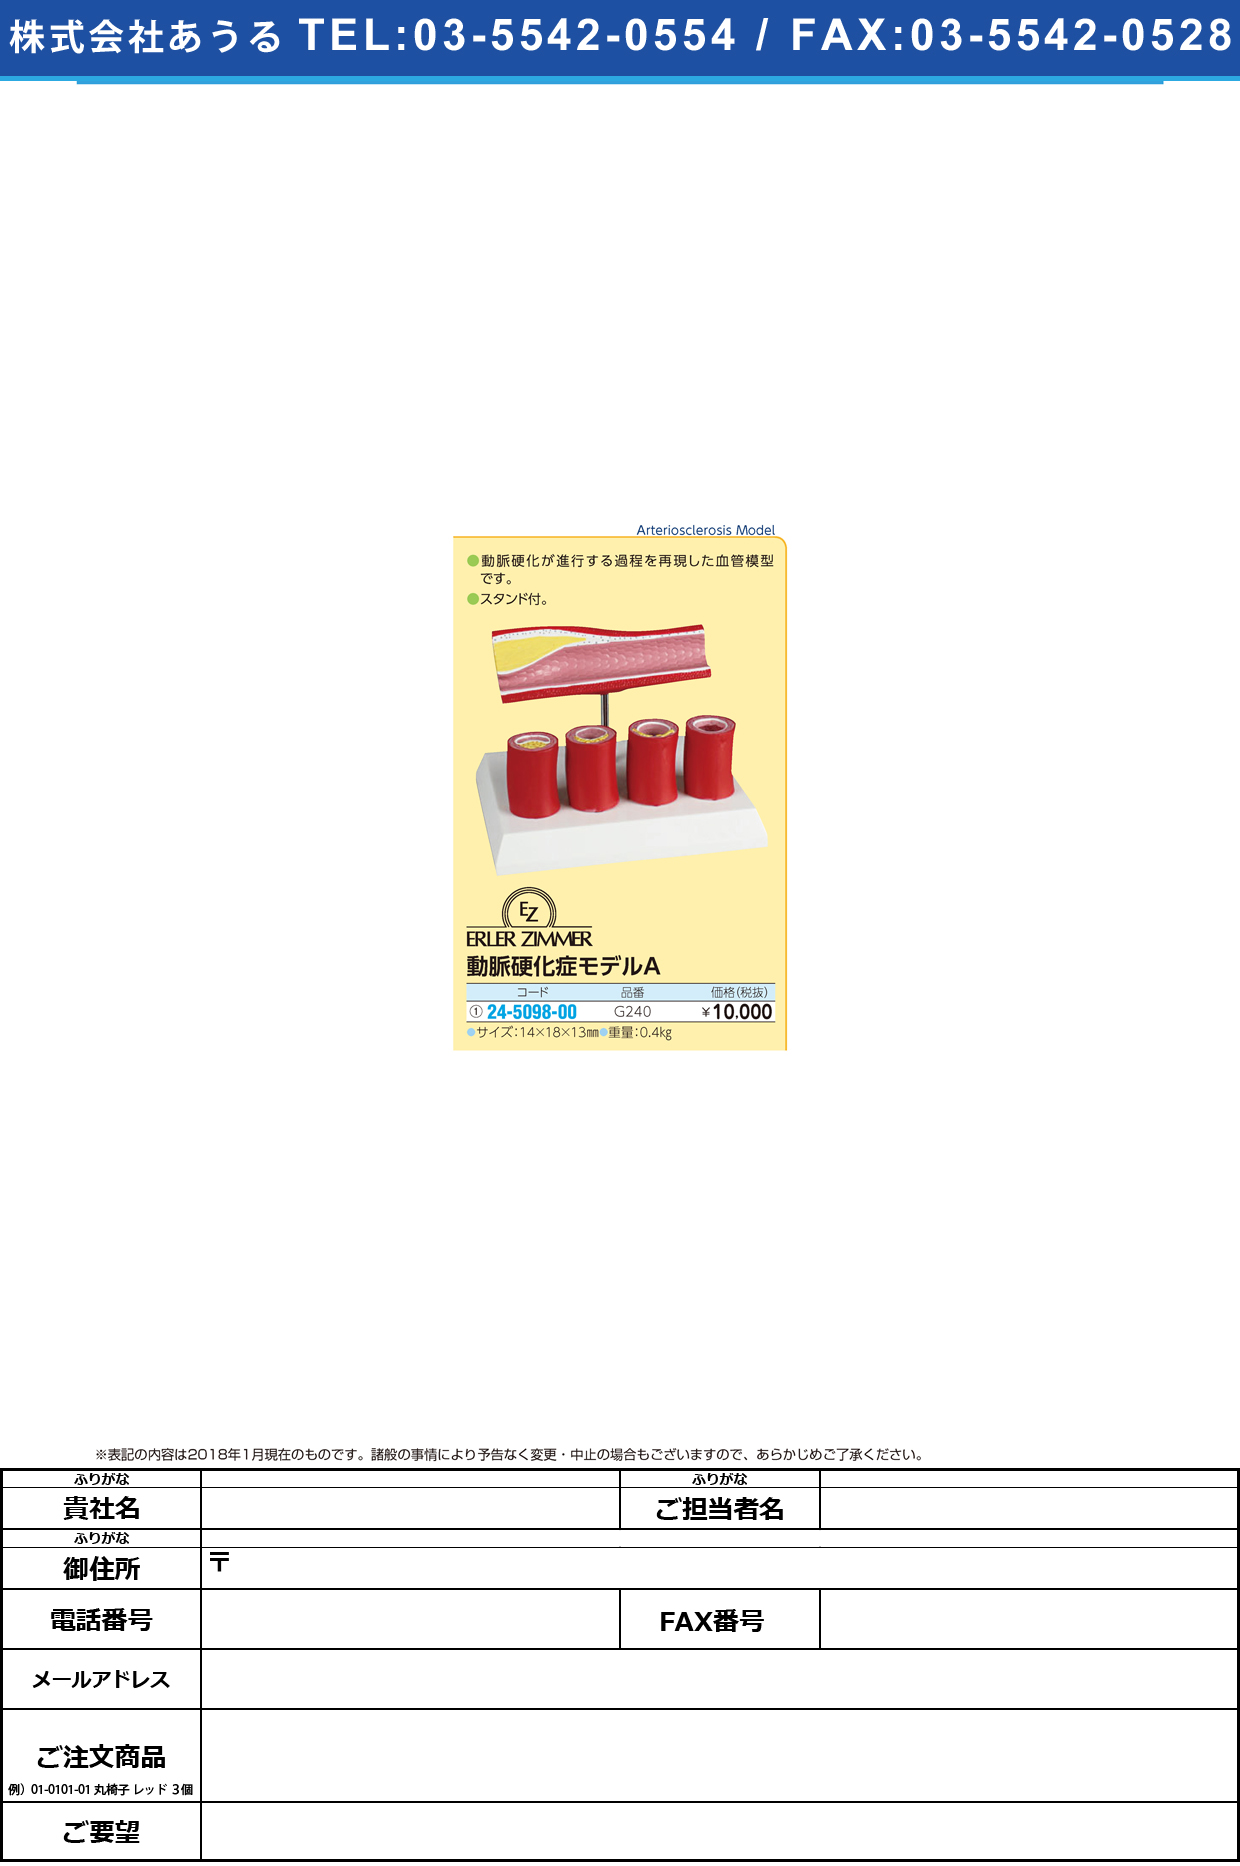 (24-5098-00)動脈硬化症モデルＡ G240 ﾄﾞｳﾐｬｸｺｳｶｼｮｳﾓﾃﾞﾙA(エルラージーマー社)【1個単位】【2019年カタログ商品】